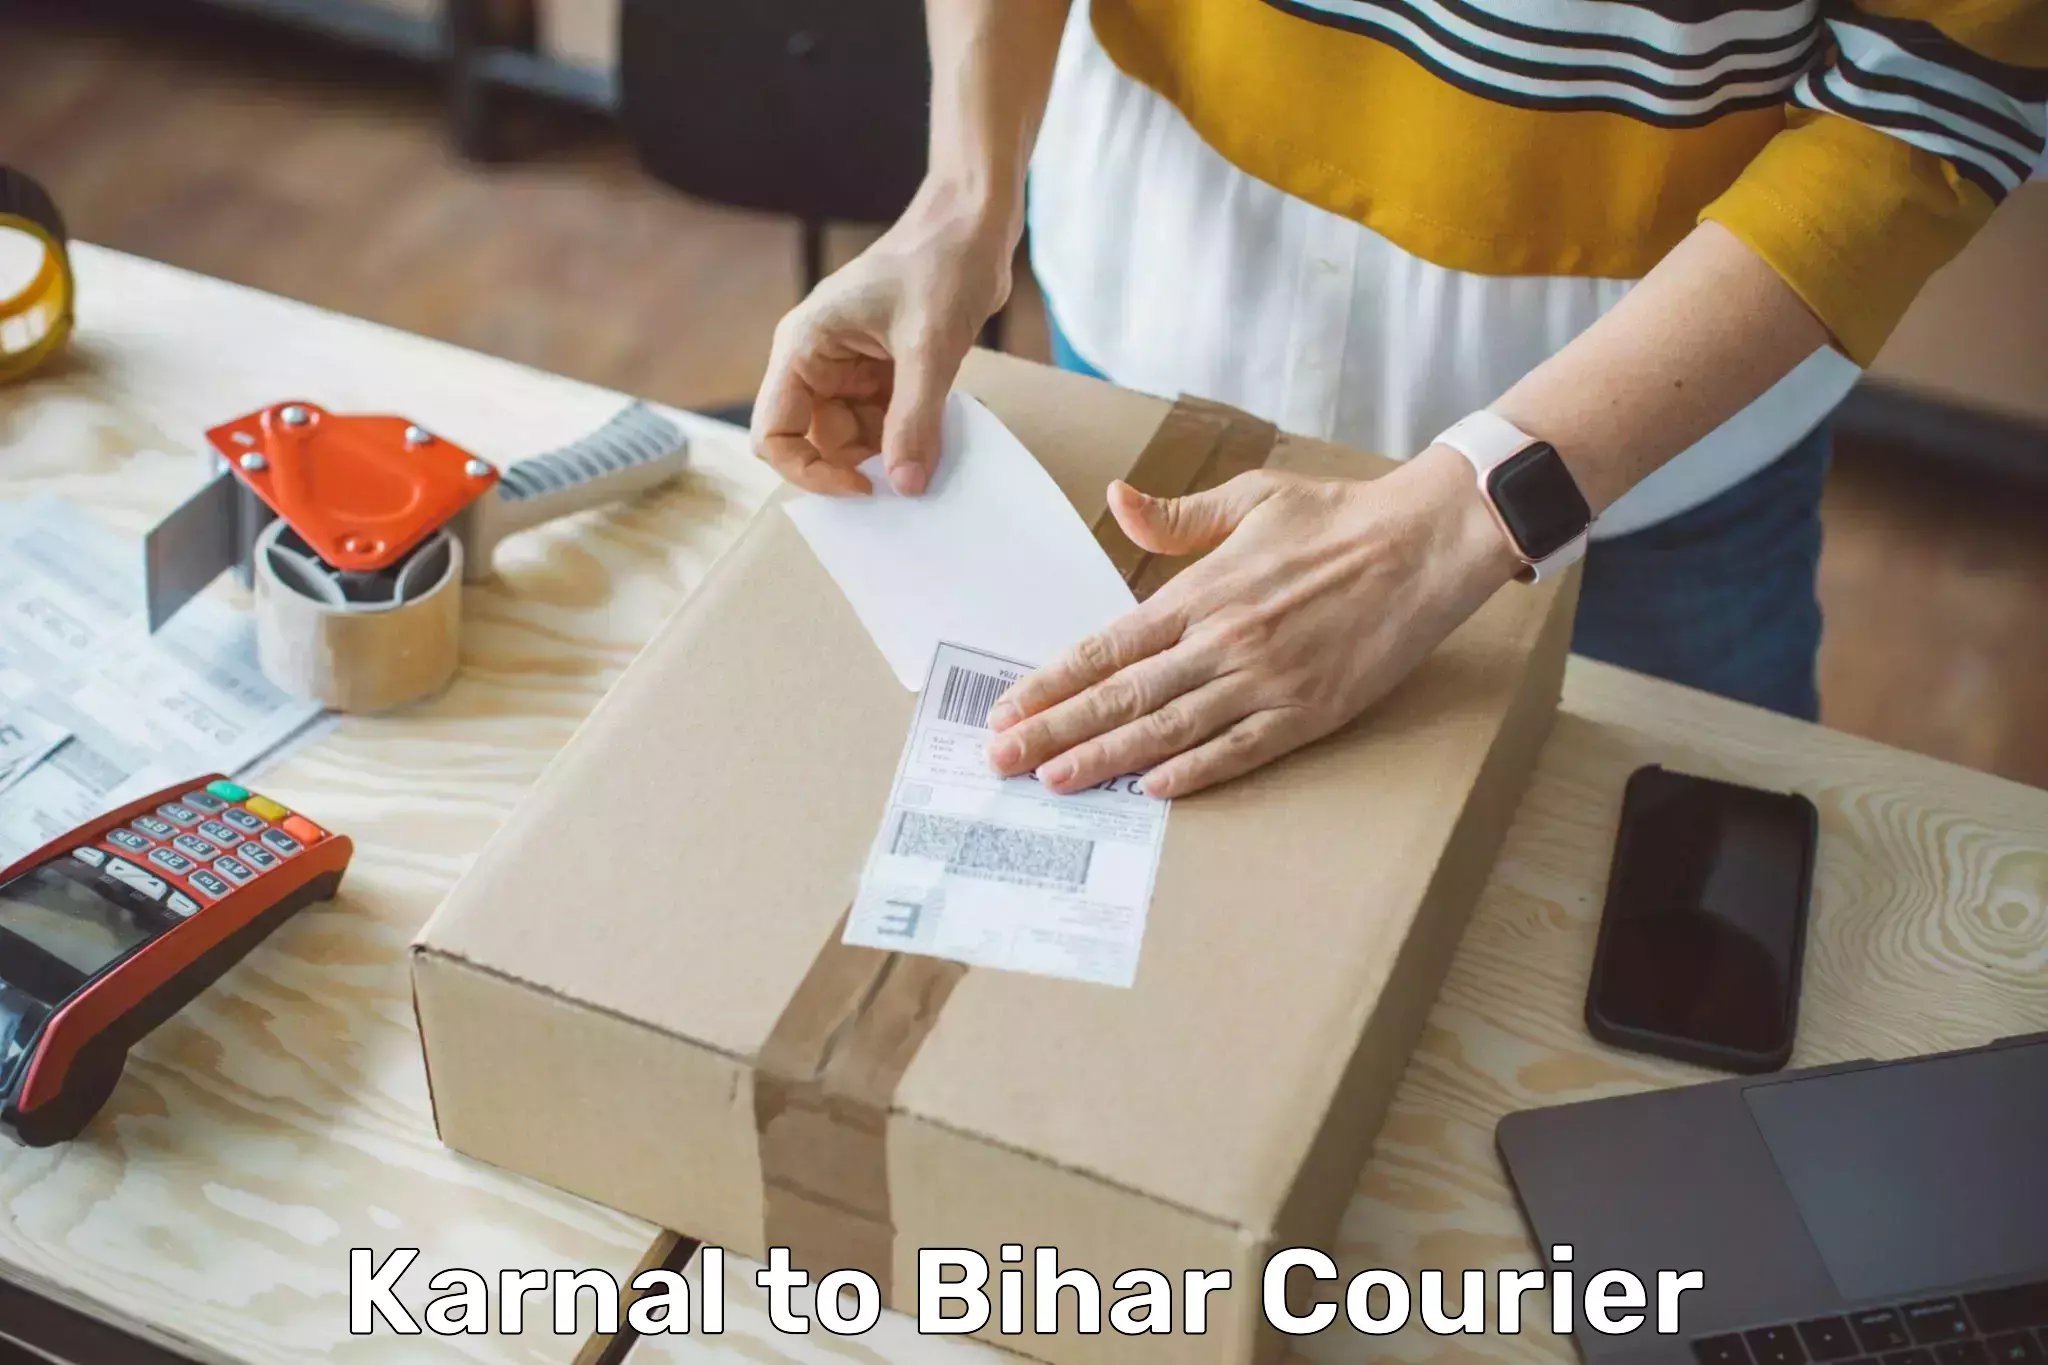 Bulk shipment Karnal to Bihar